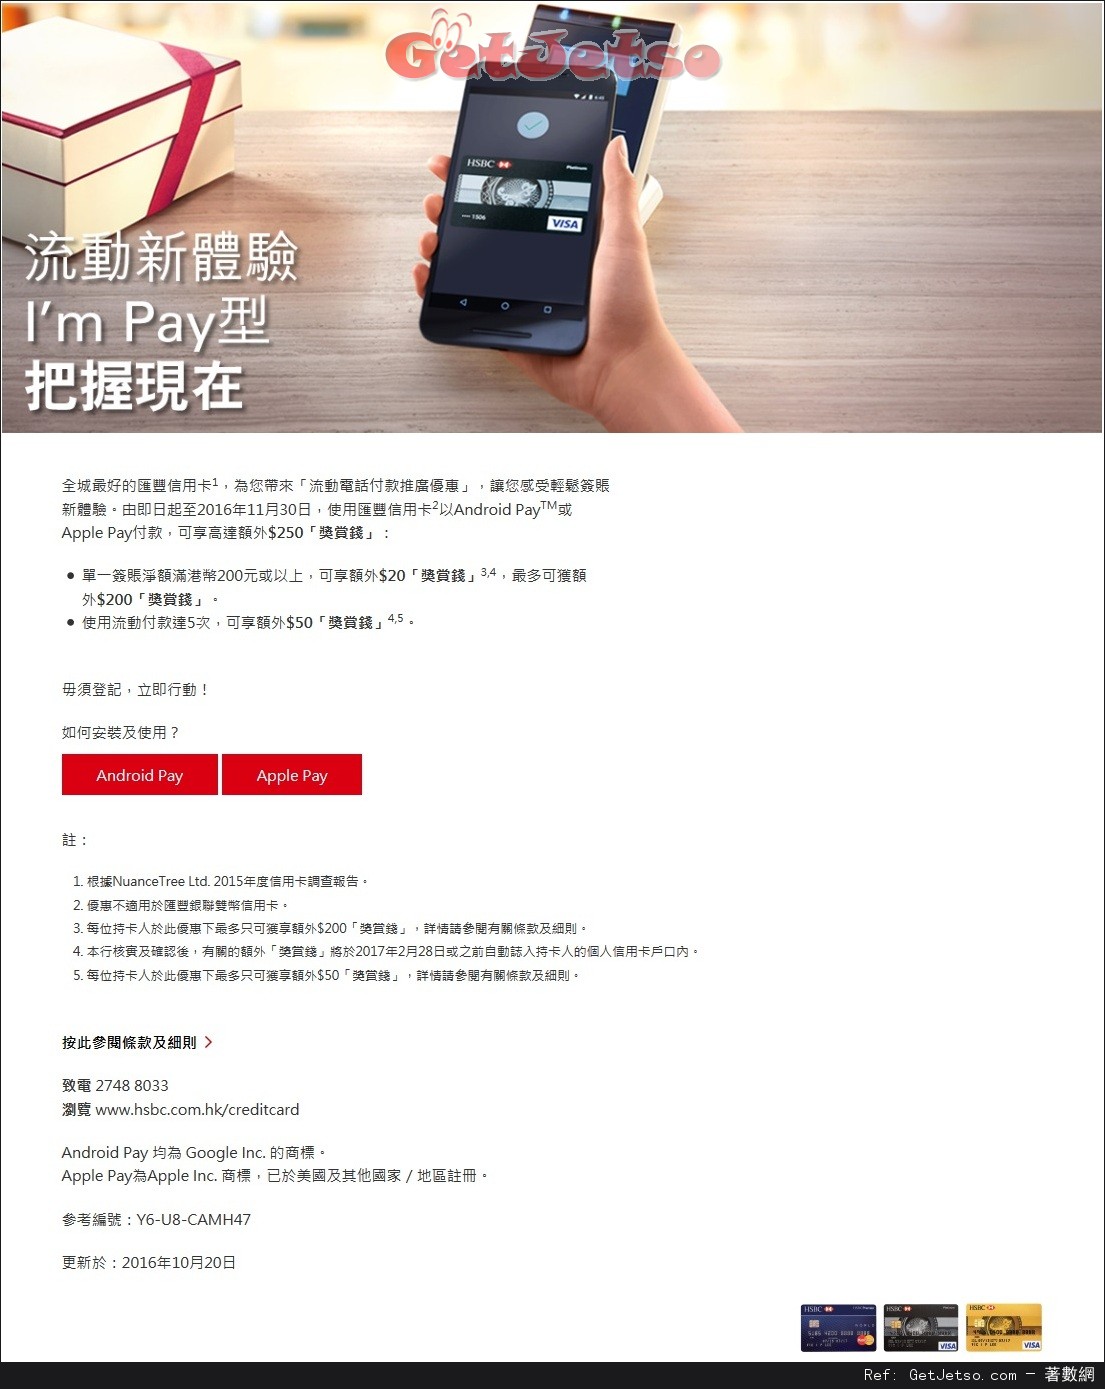 滙豐信用卡Android Pay/Apple Pay流動電話付款推廣優惠(至16年11月30日)圖片1